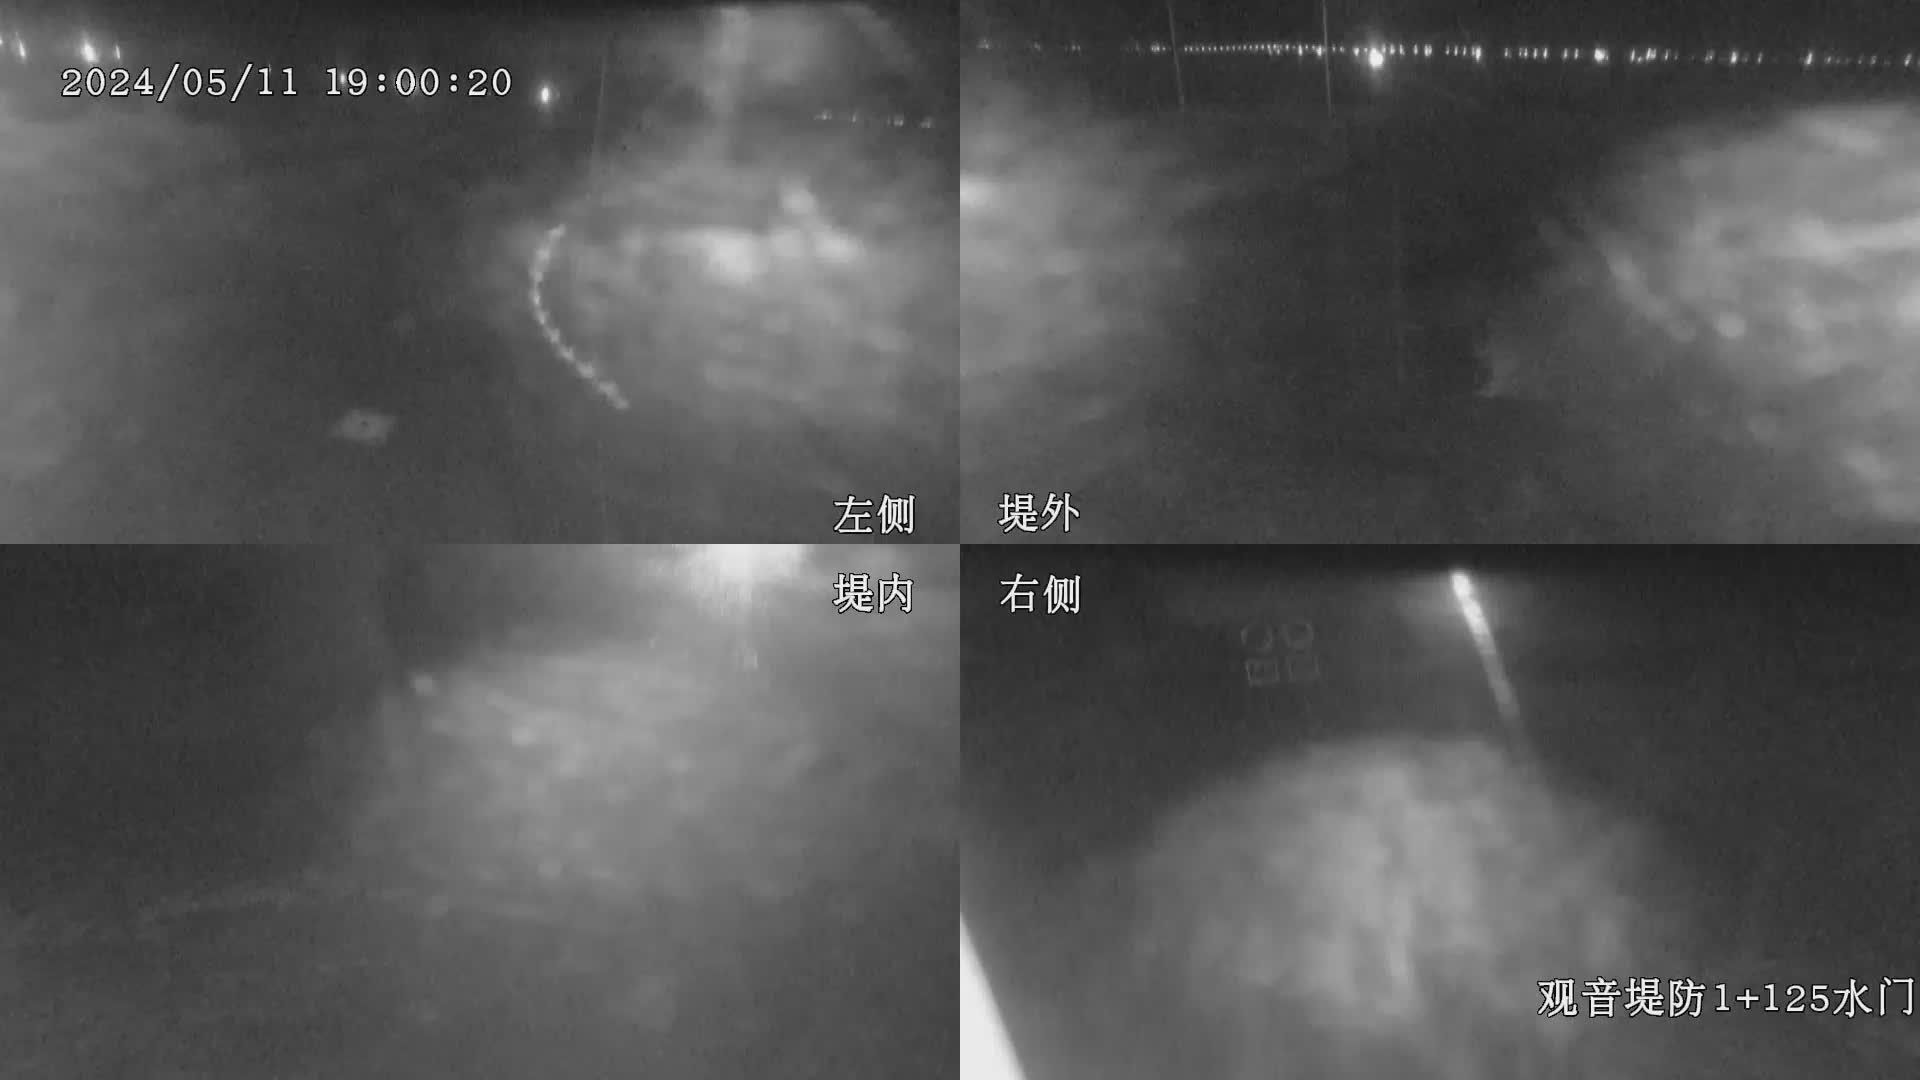 水利署水資源  九河局 觀音堤防1+125水門 全景攝影機 距離0.5公里 氣溫21.8度